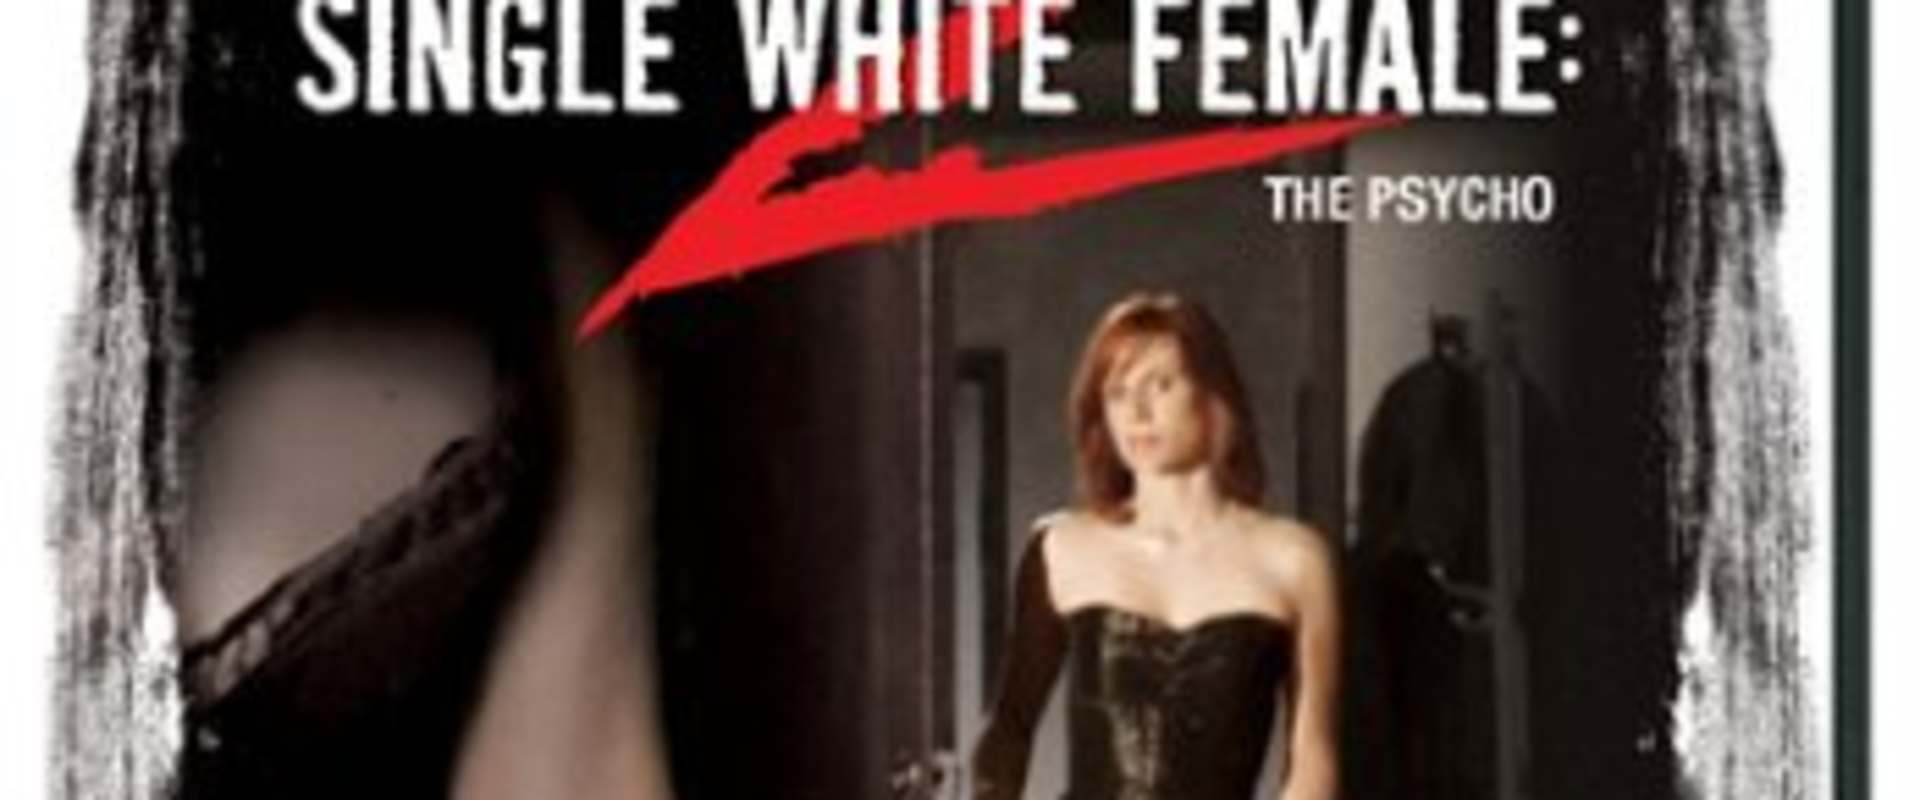 Single White Female 2: The Psycho background 1